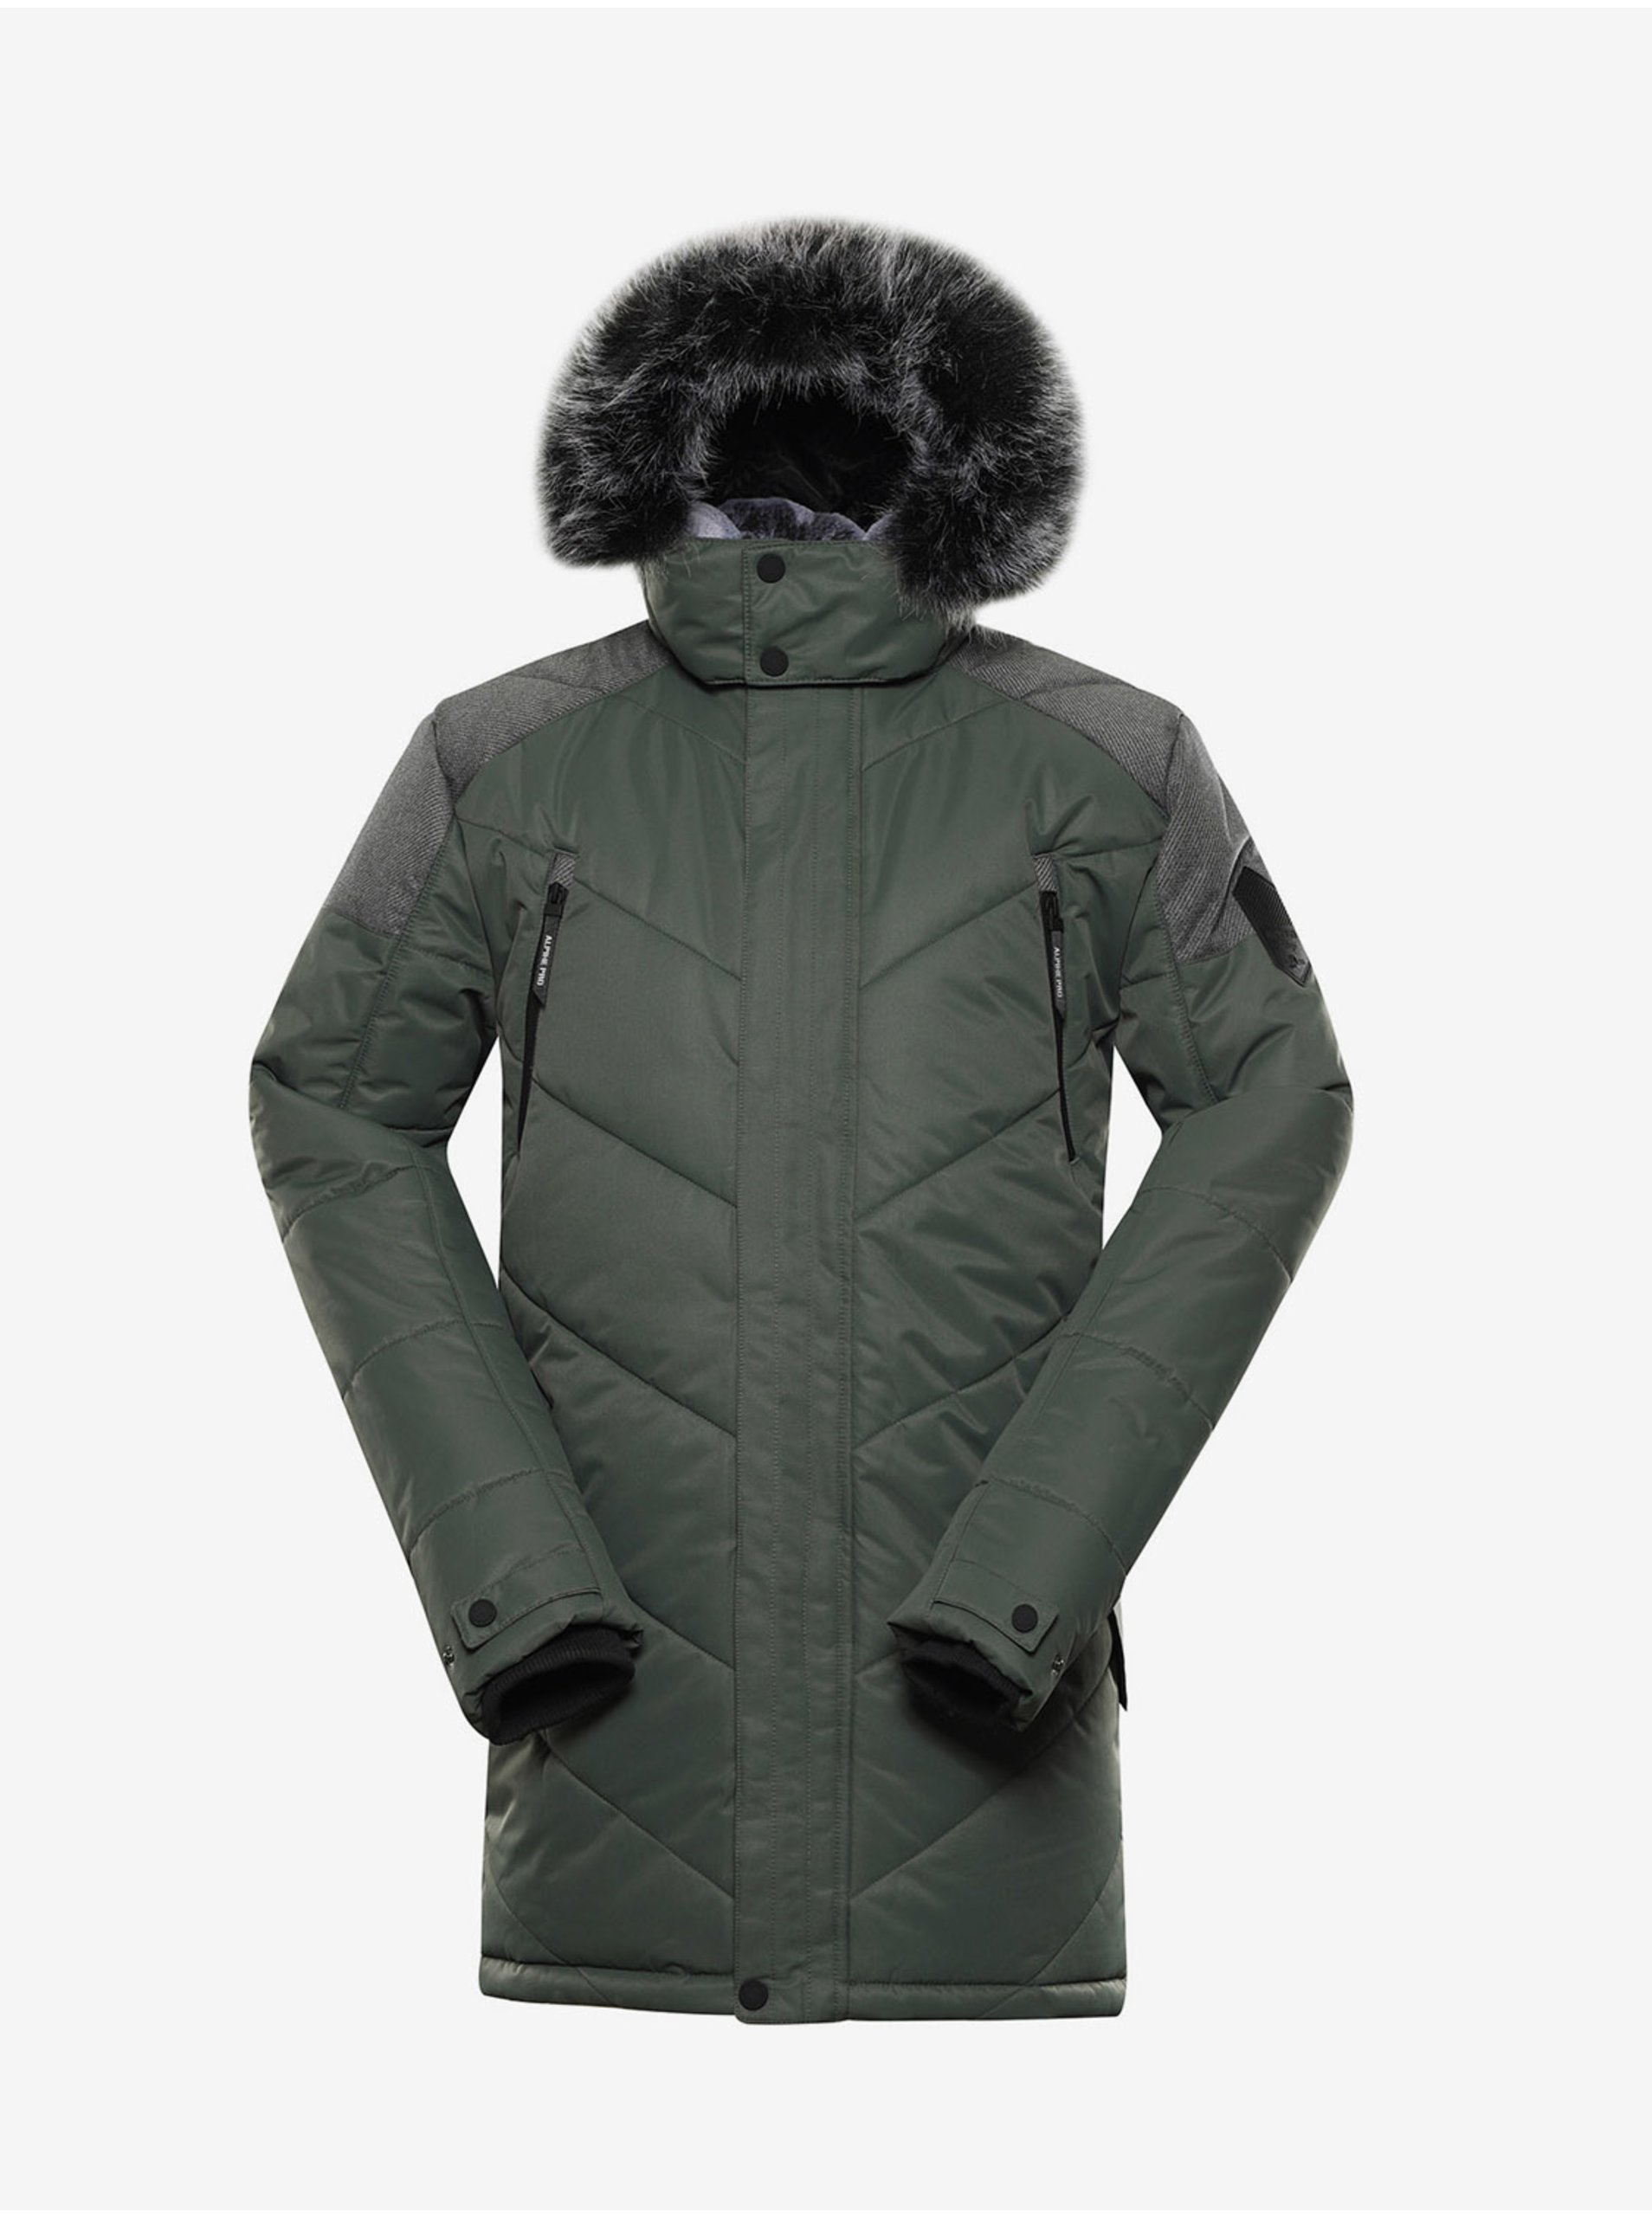 E-shop Tmavě zelená pánská zimní bunda s kapucí Alpine Pro ICYB 7 zelená